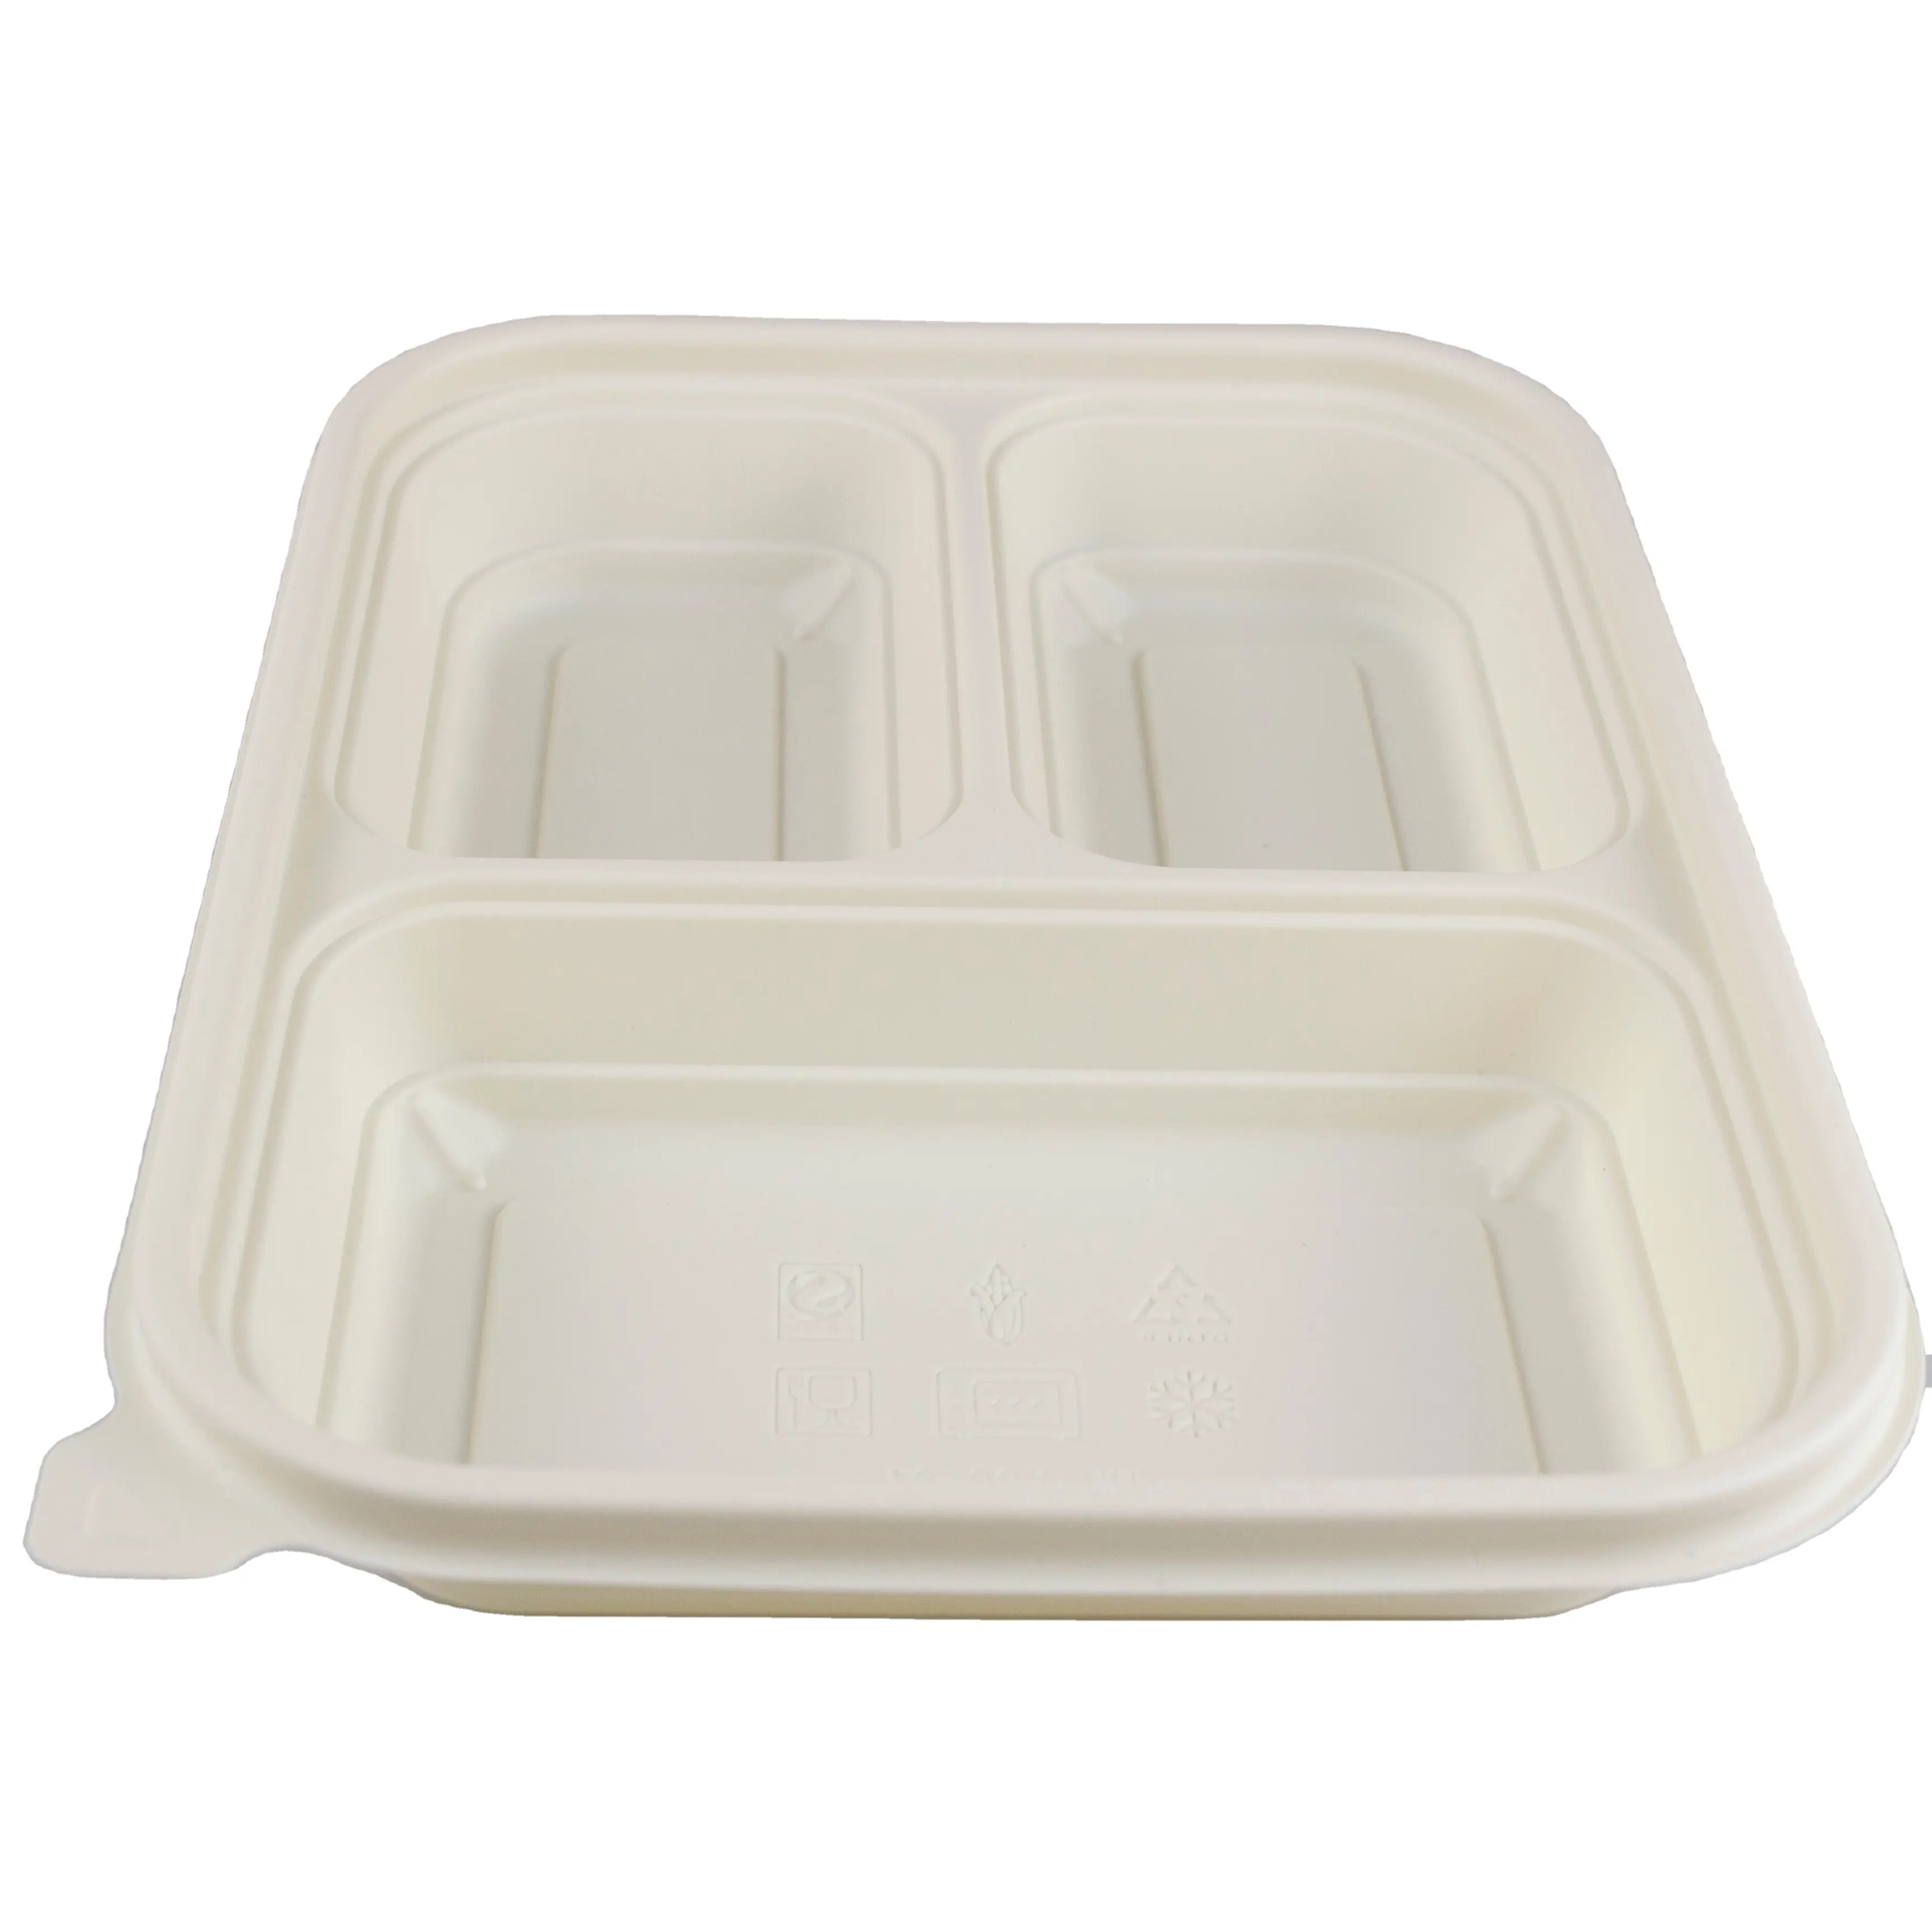 Các nhà sản xuất bán hàng trực tiếp đóng gói quà tặng Hộp 3 ngăn bột bắp hình chữ nhật container thực phẩm